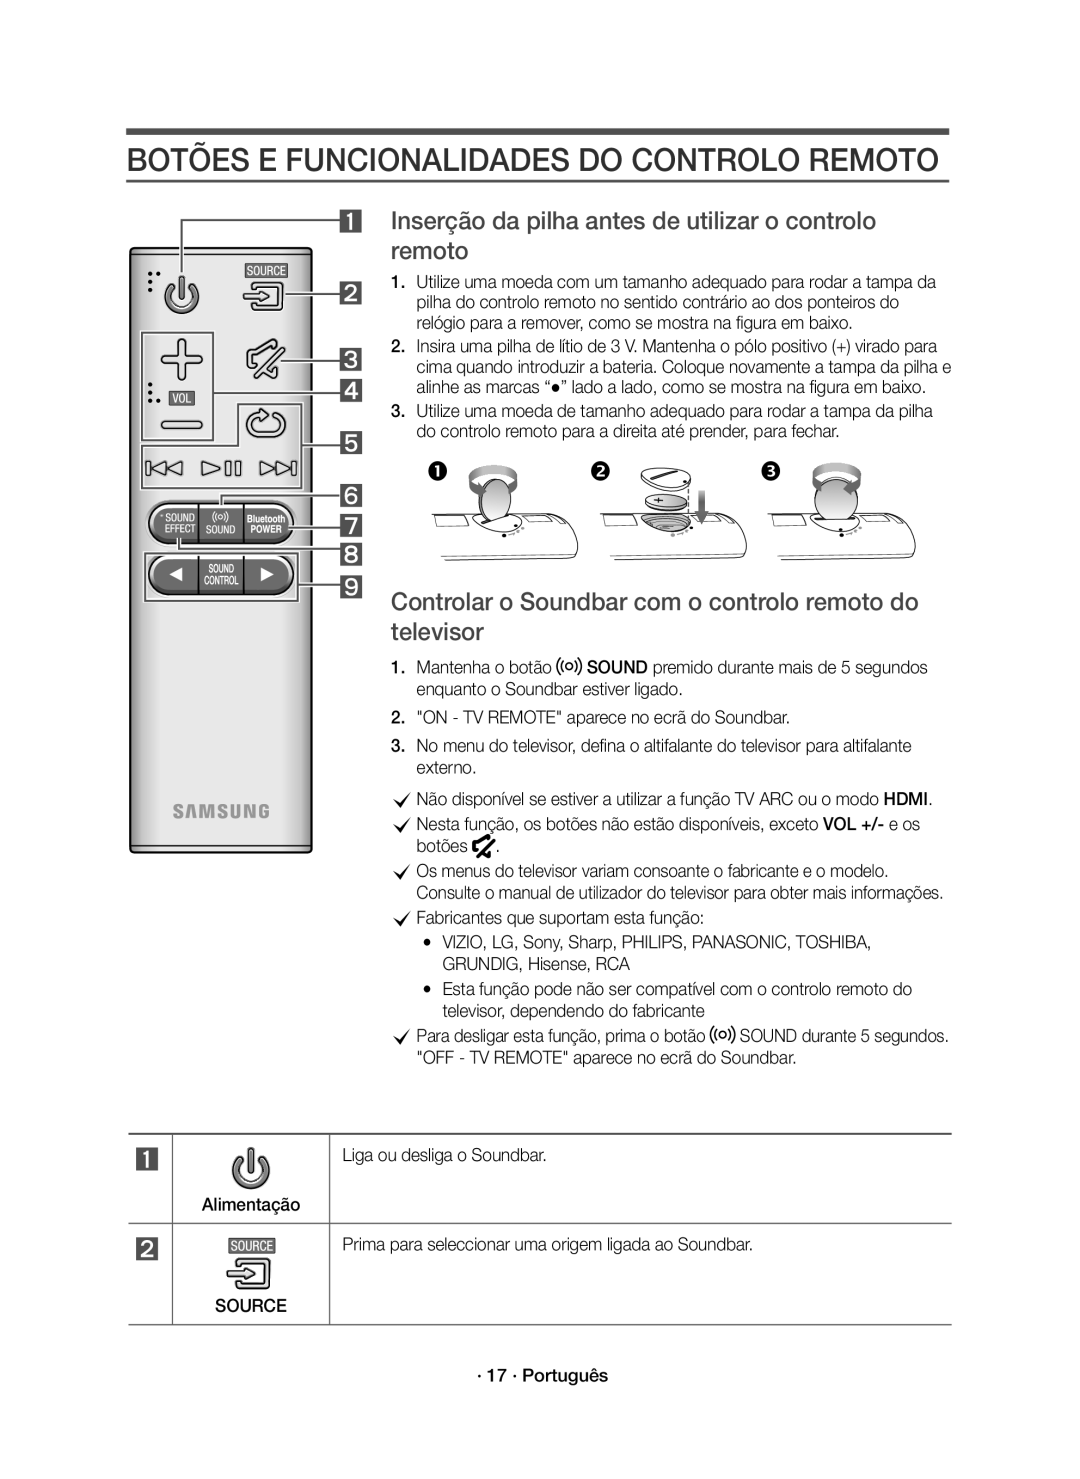 Samsung HW-K650/ZF Botões E Funcionalidades Do Controlo Remoto, Inserção da pilha antes de utilizar o controlo remoto 